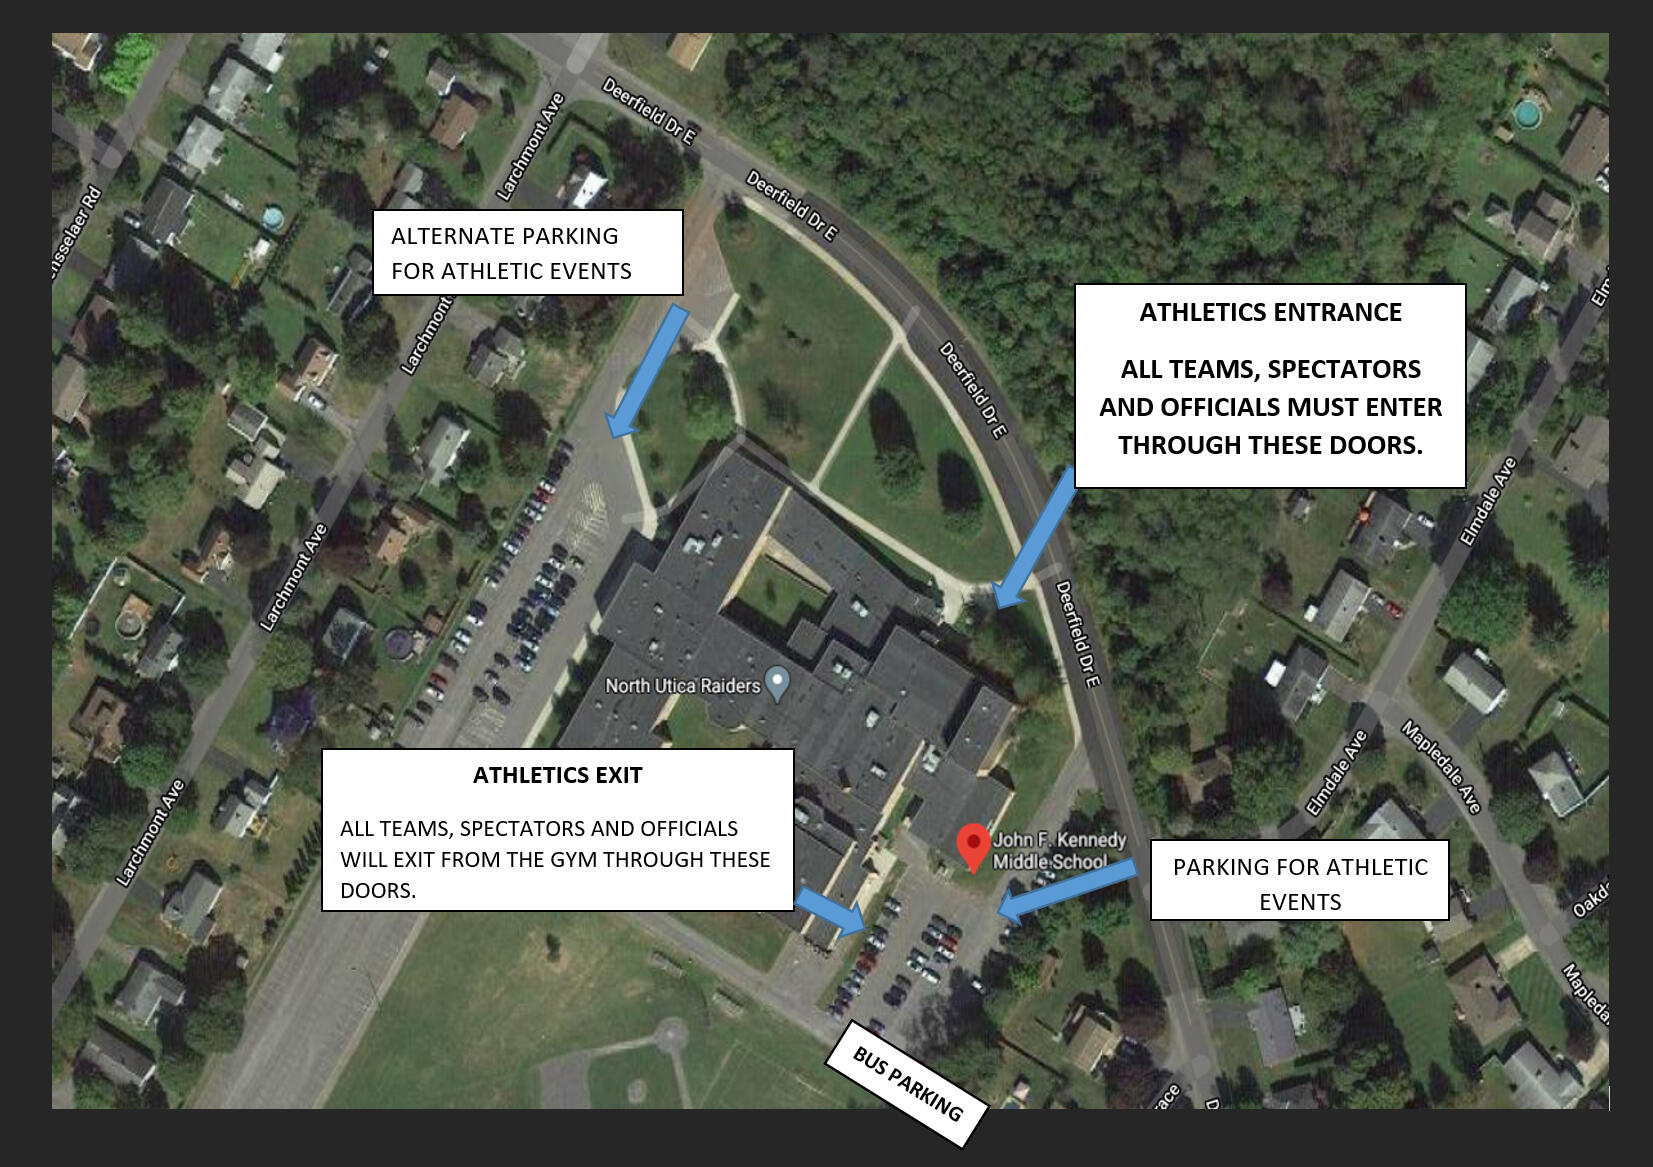 जेएफके माध्यमिक विद्यालयातील पार्किंगचा दृश्य नकाशा